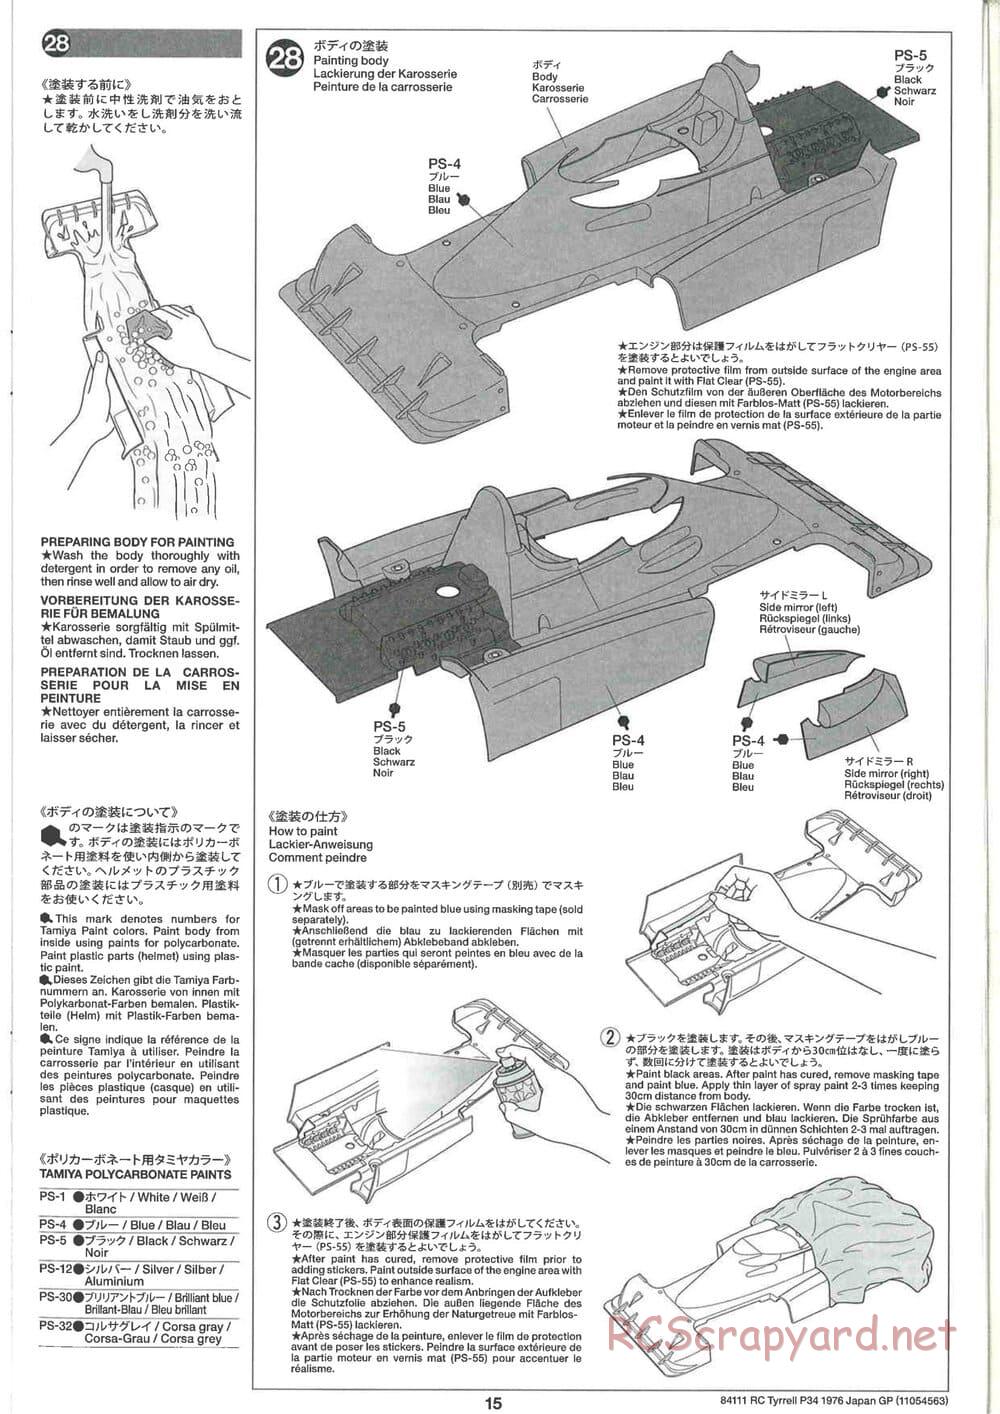 Tamiya - Tyrrell P34 1976 Japan GP - F103-6W Chassis - Manual - Page 15